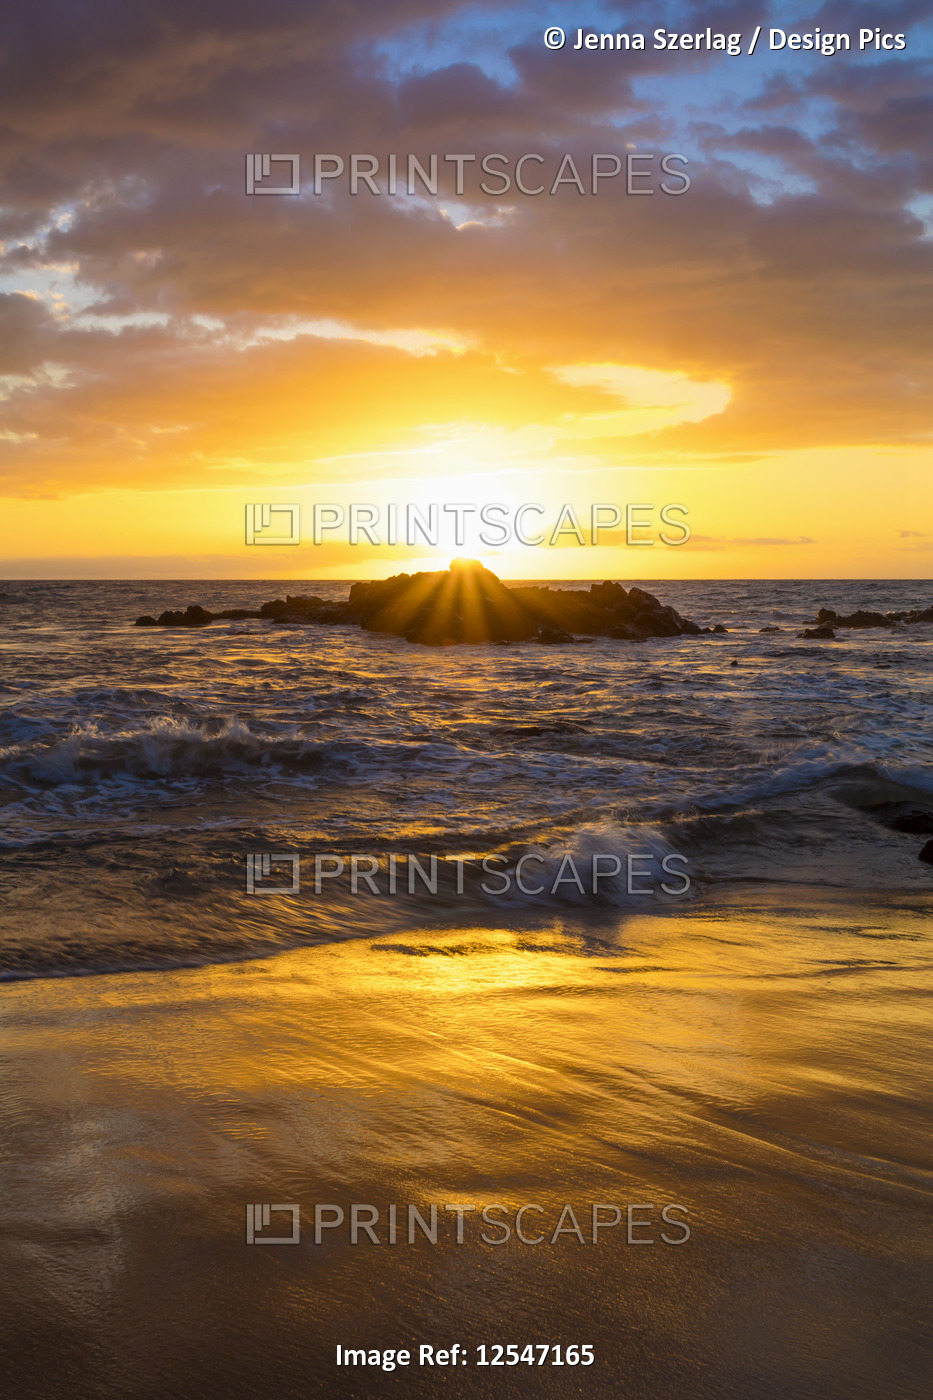 A Golden Sunset with Reflection On Sand at Ulua Beach, Wailea, Maui, Hawaii USA 